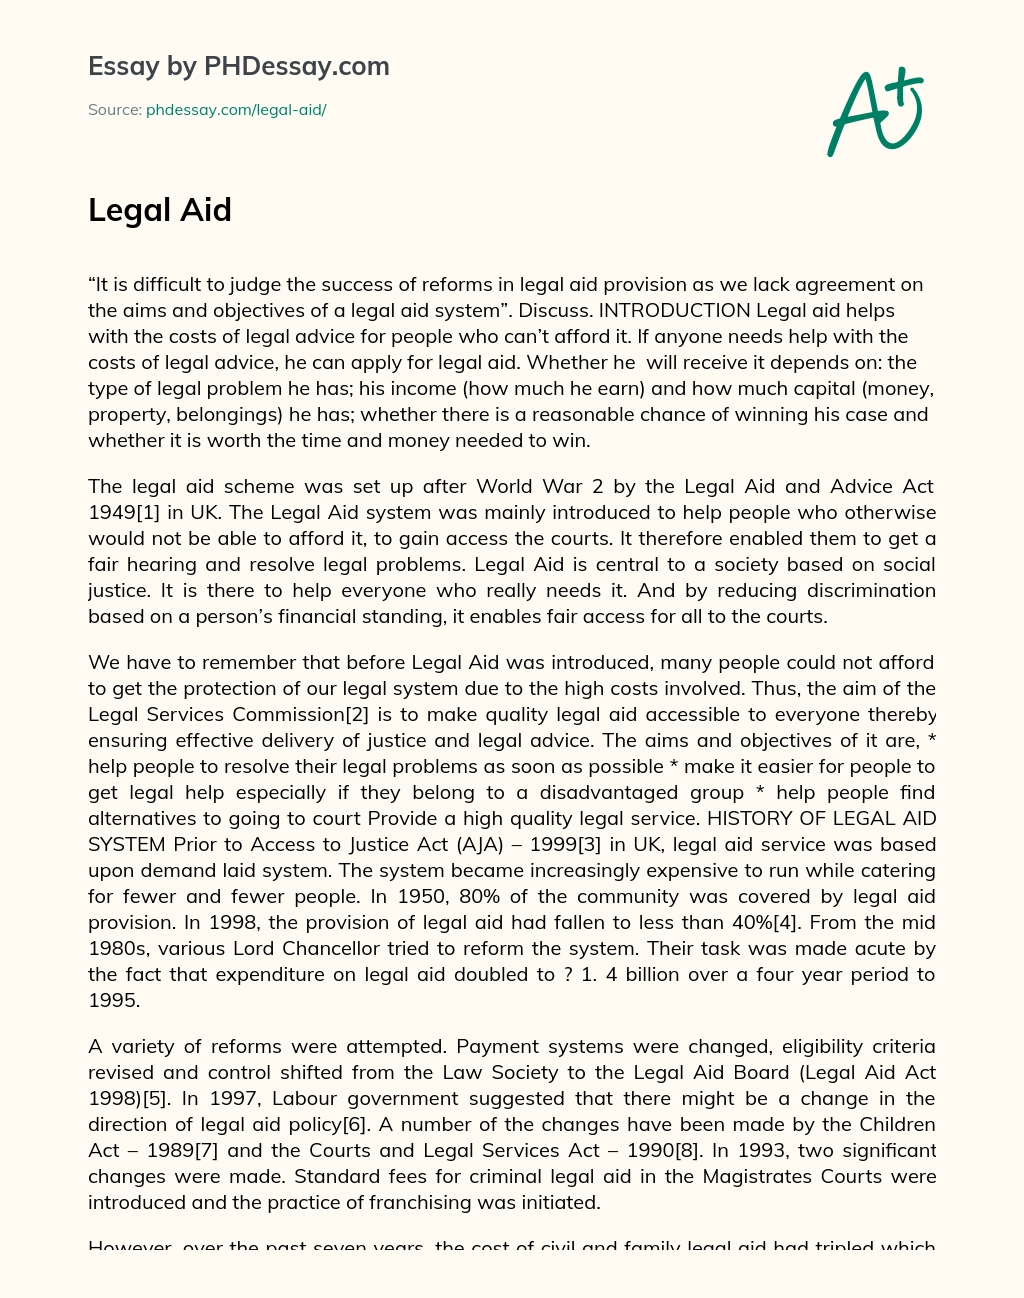 free legal aid essay